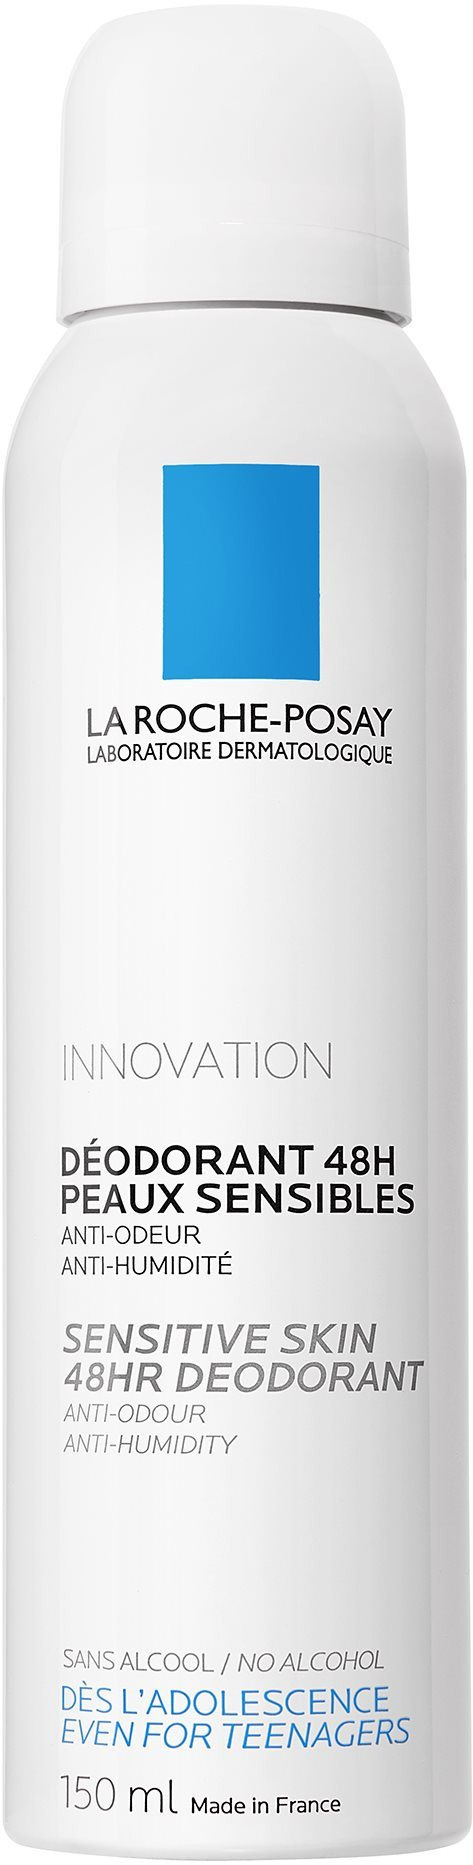 Dezodor LA ROCHE-POSAY Deodorant Physiologique Aerosol 48H 150 ml